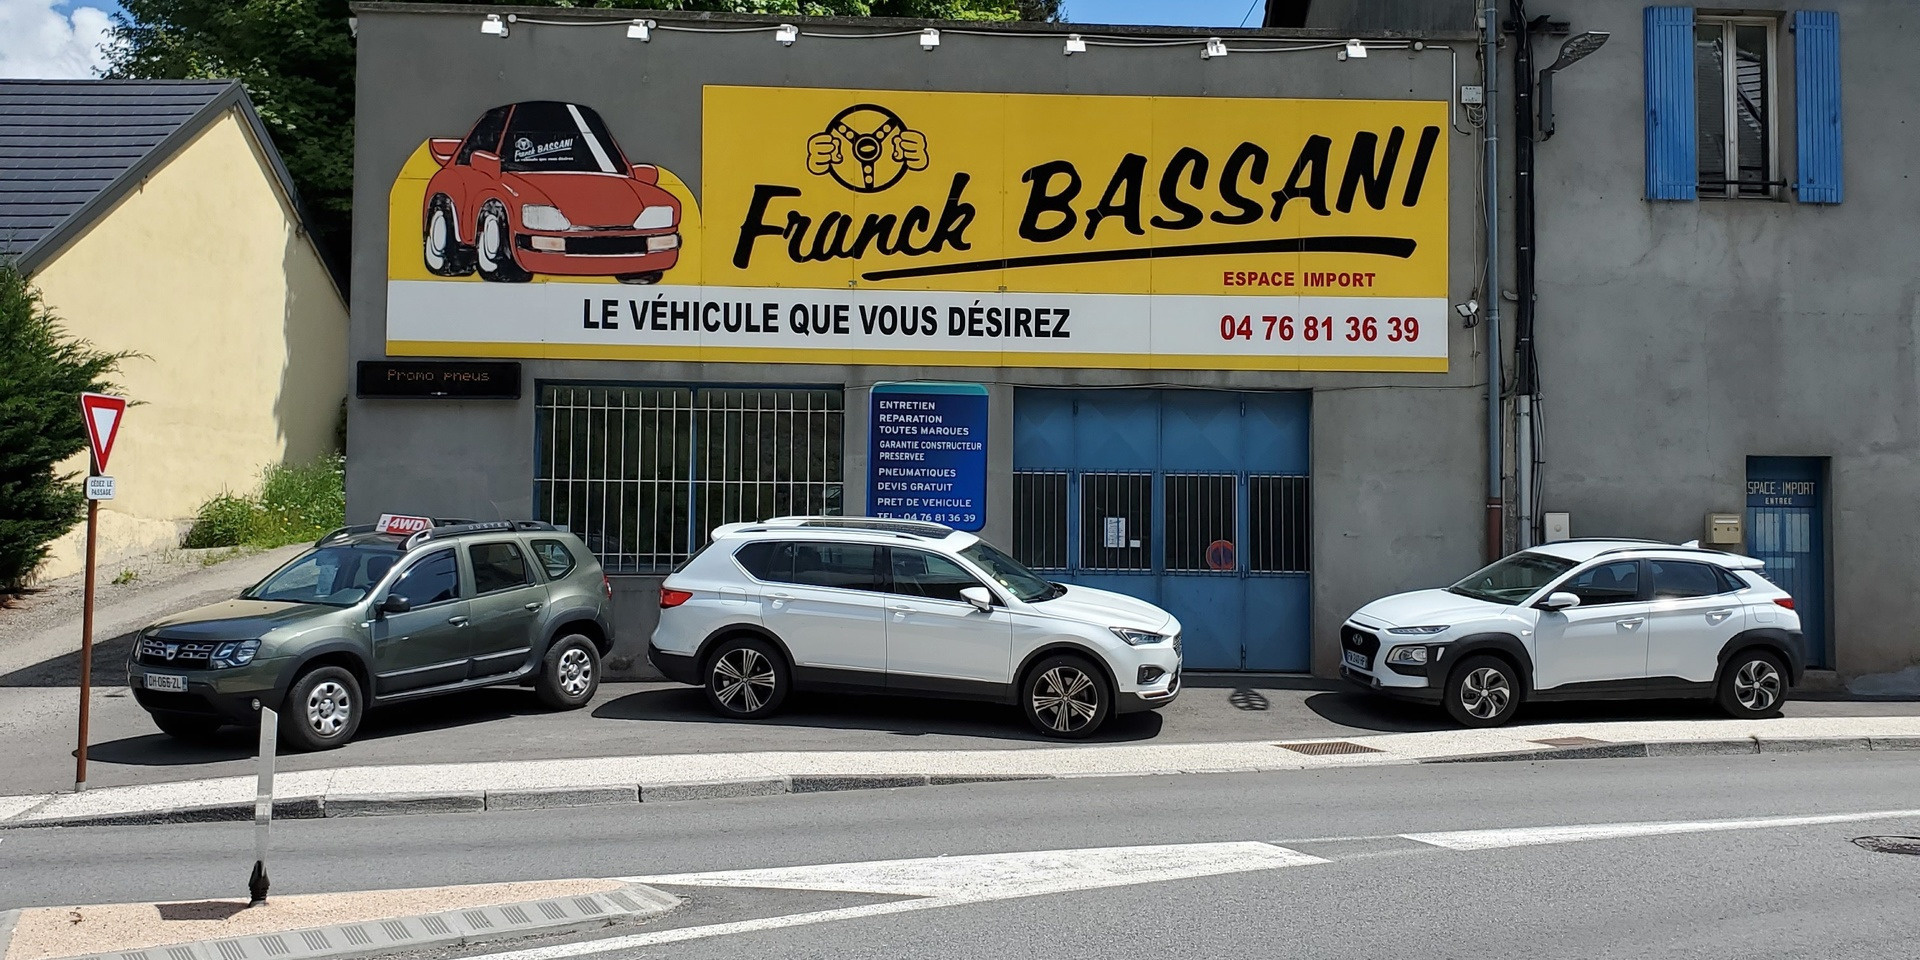 Boutique FRANCK BASSANI - La Mure